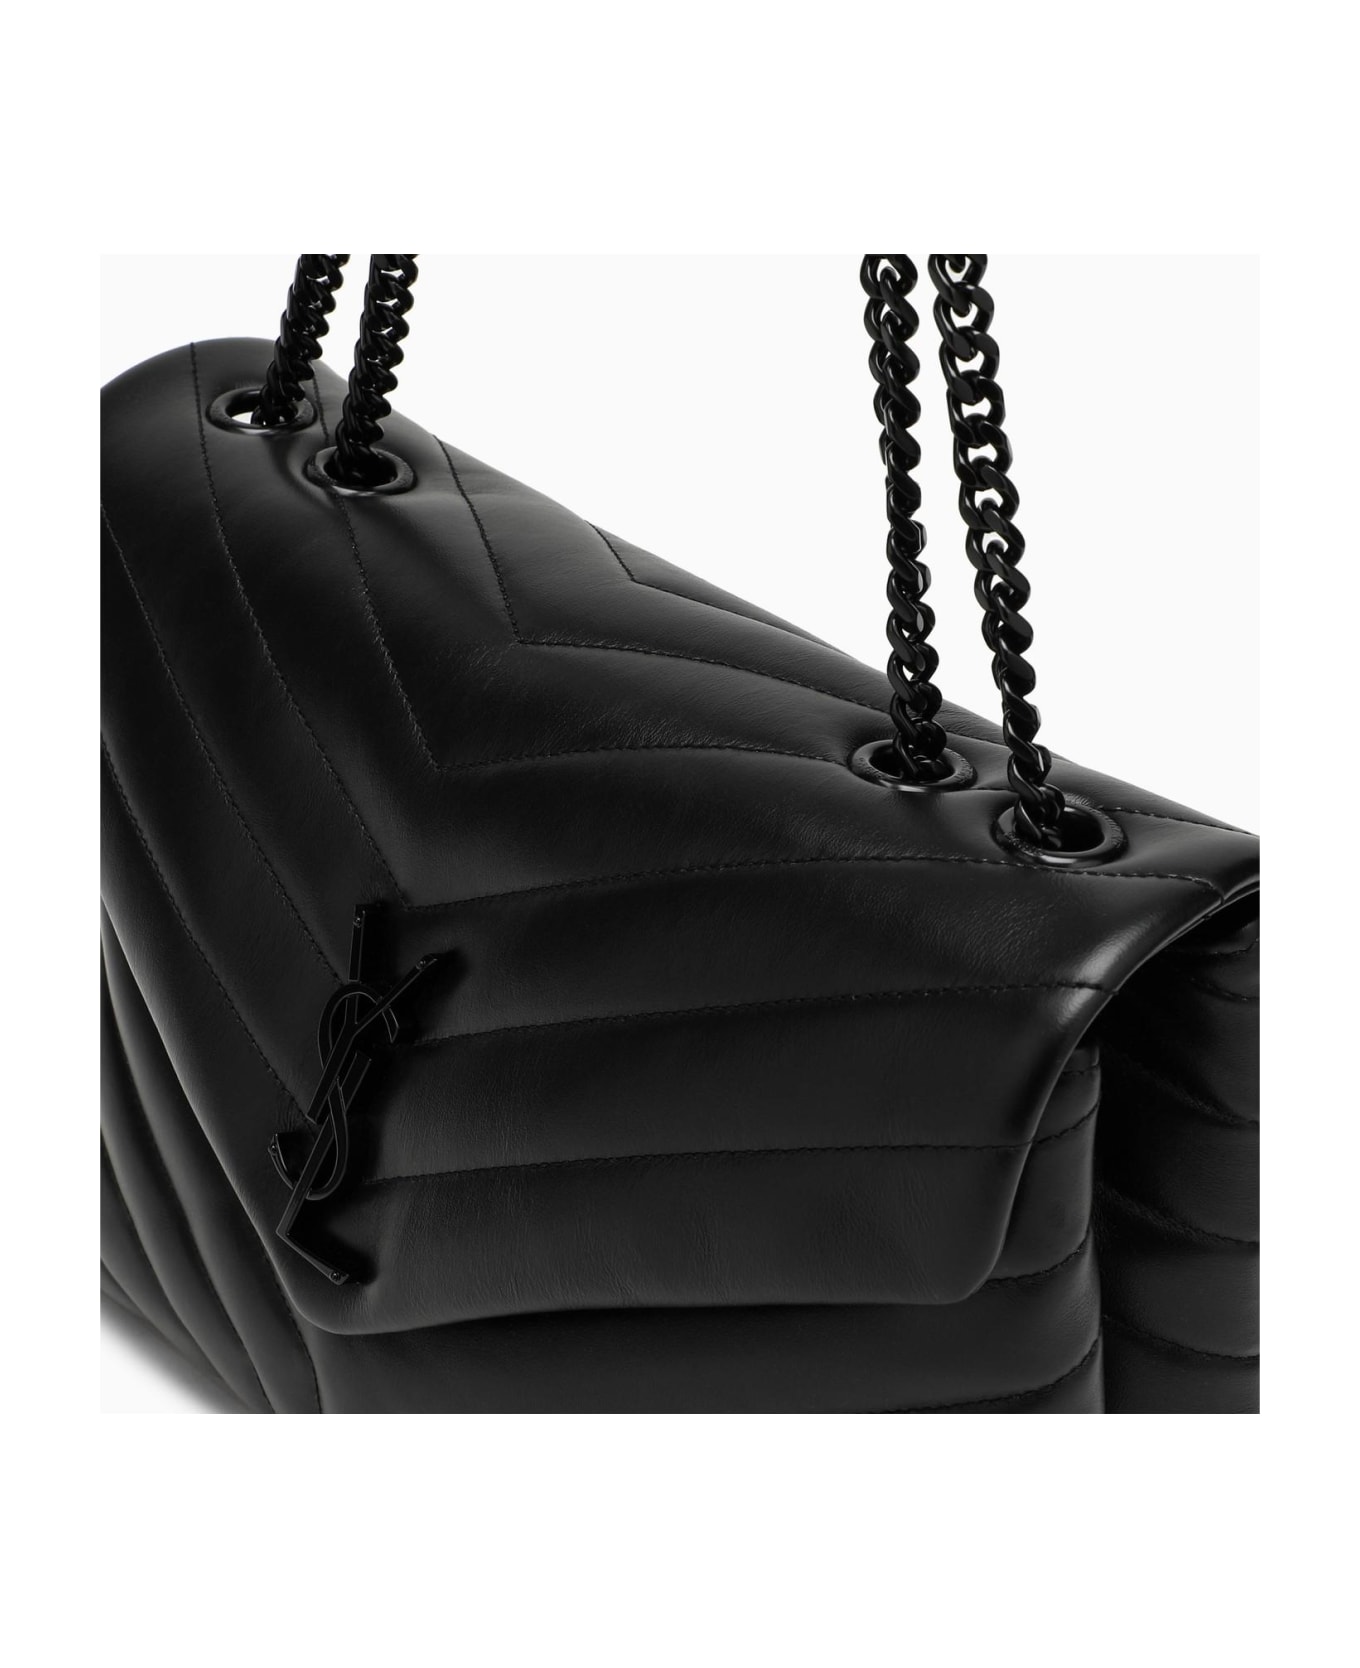 Saint Laurent Black Medium Loulou Bag - BLACK ショルダーバッグ